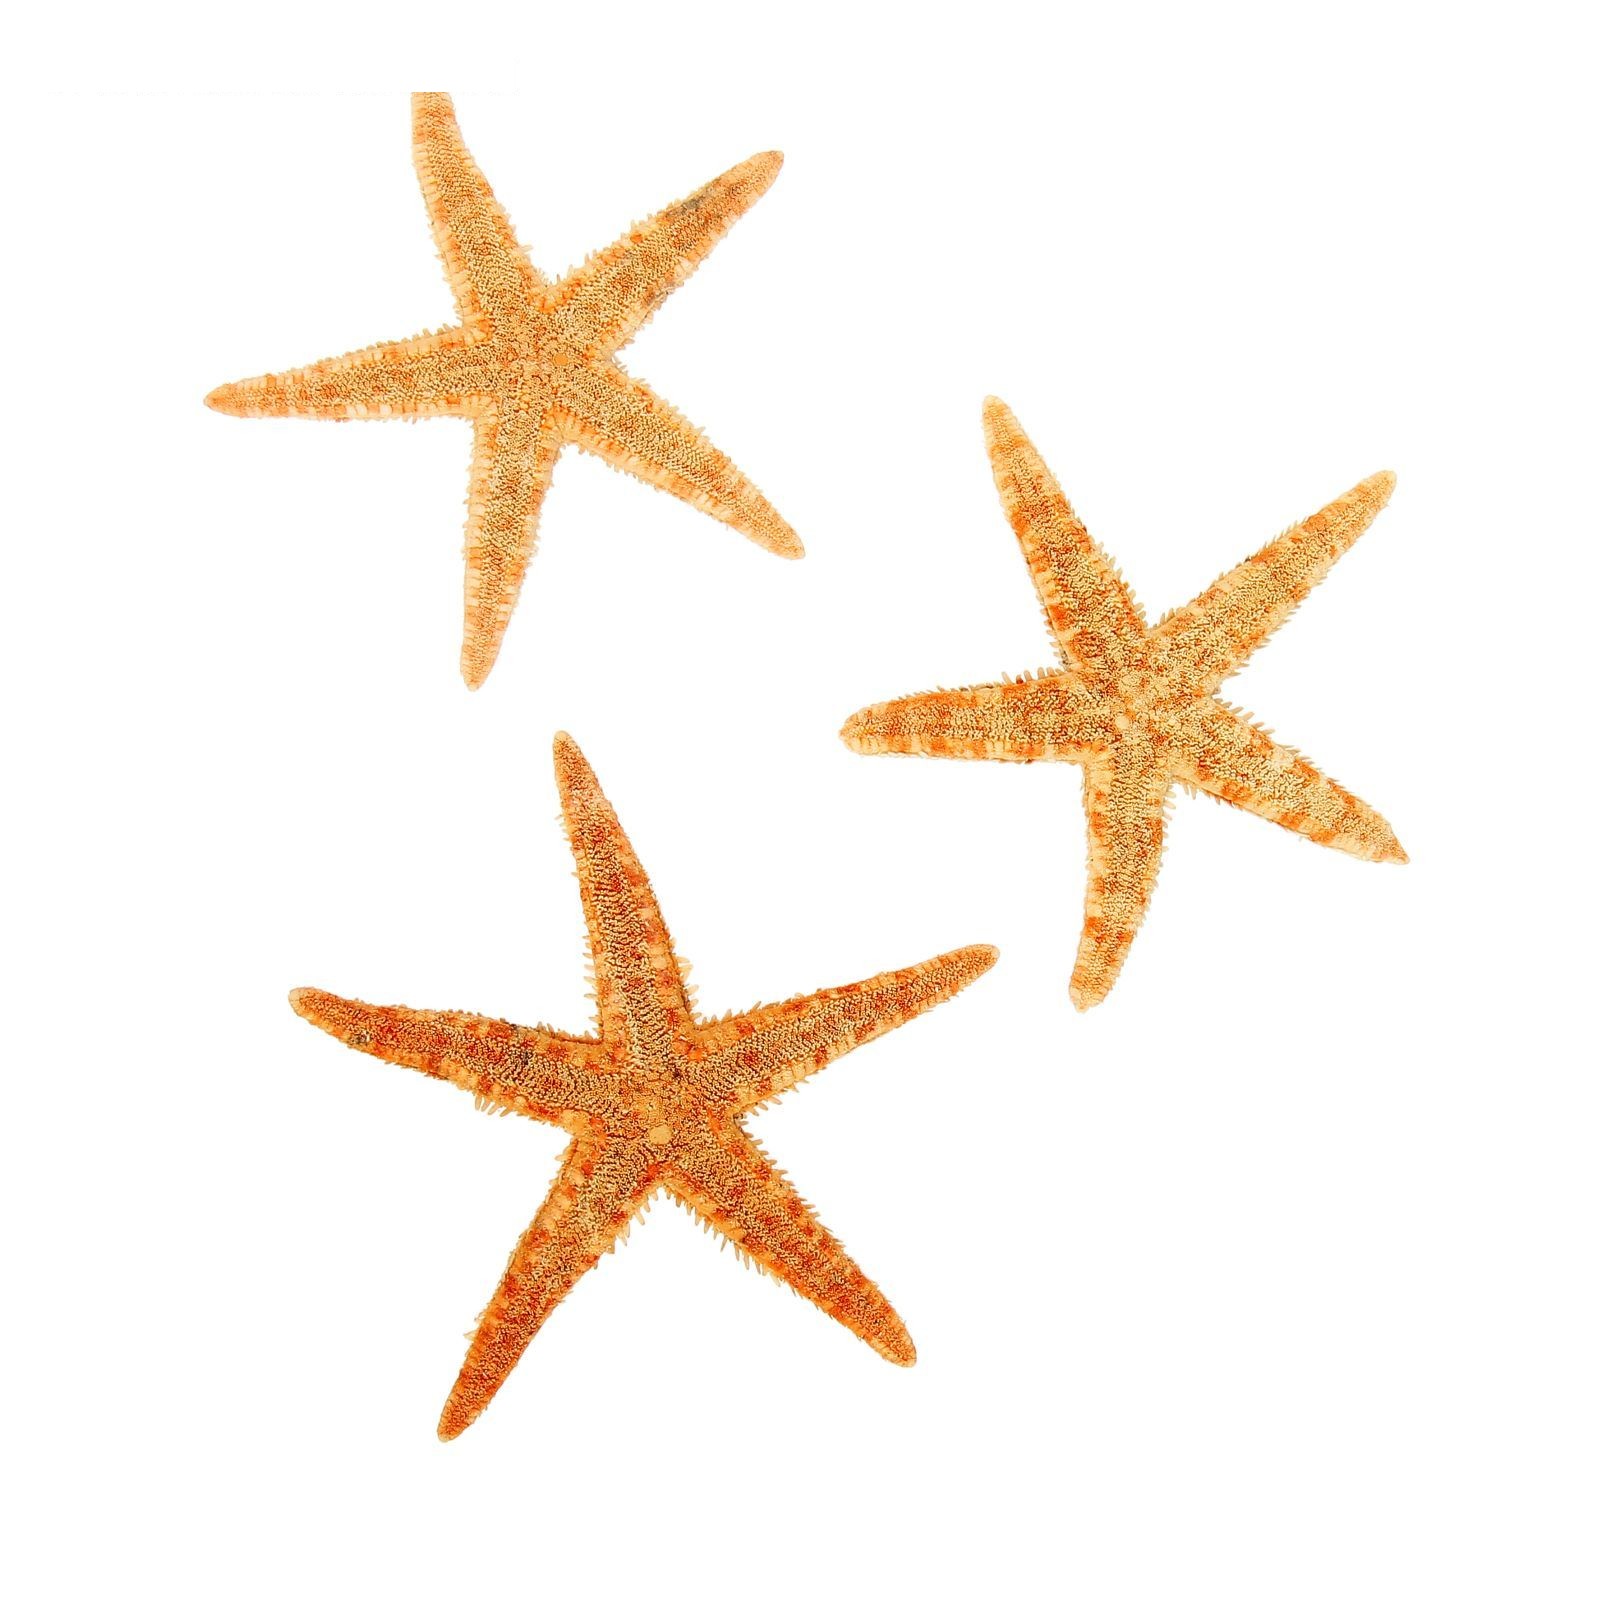 Набор из 3 морских звезд, размер каждой 6-10 см